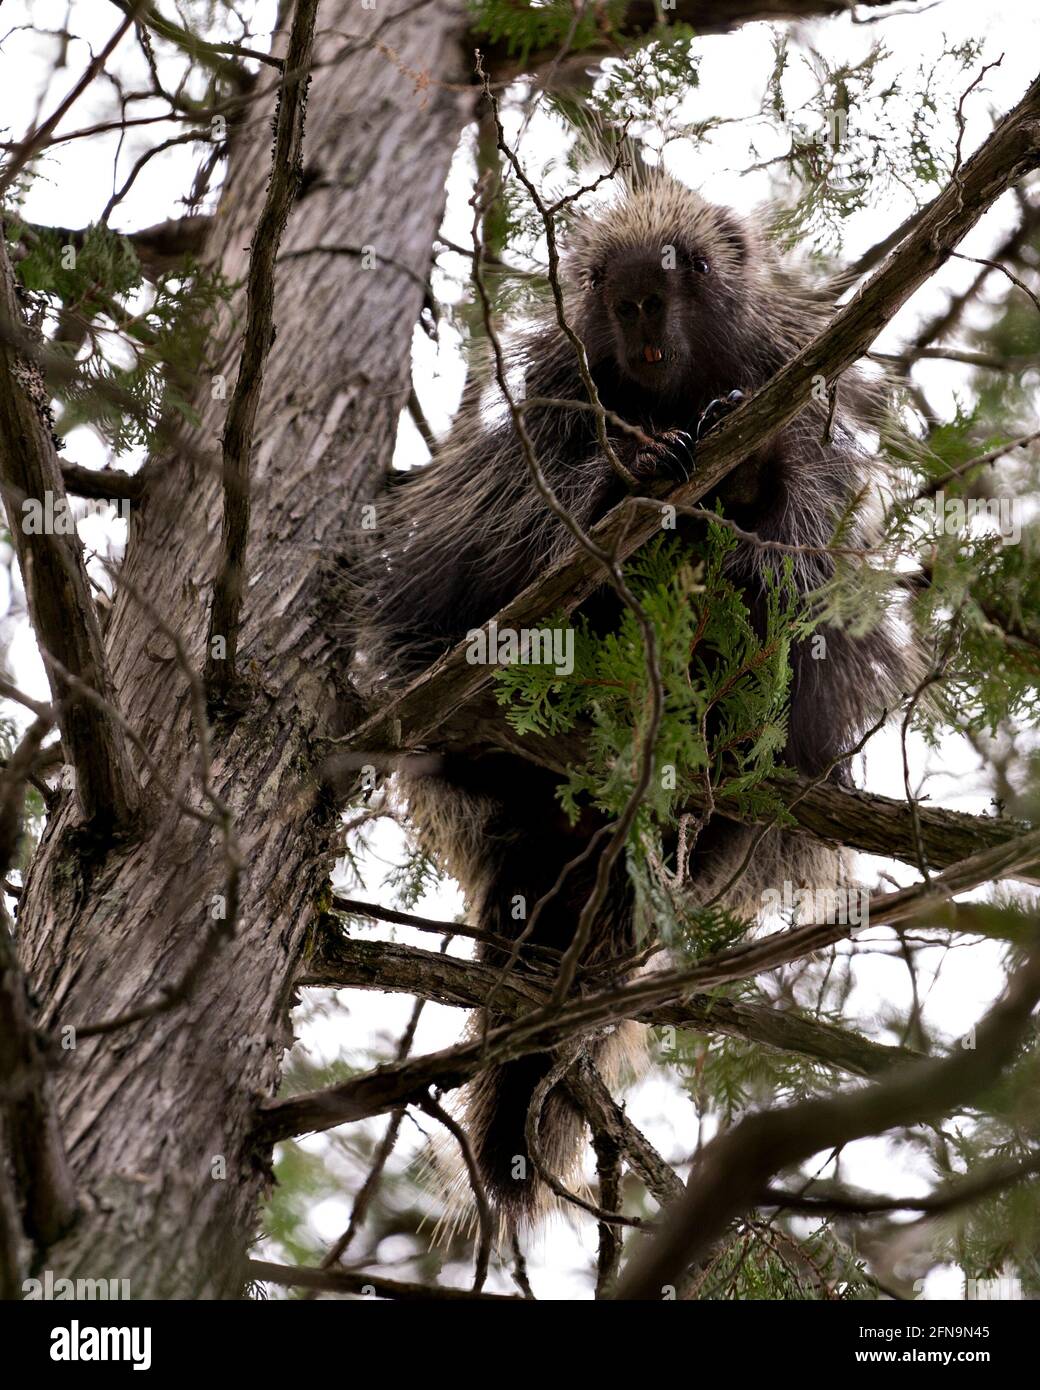 Porcupine se cachant dans un arbre, montrant son corps, sa tête, son manteau de épines acérées, des quills, au printemps avec des aiguilles de premier plan de pin et le dos Banque D'Images